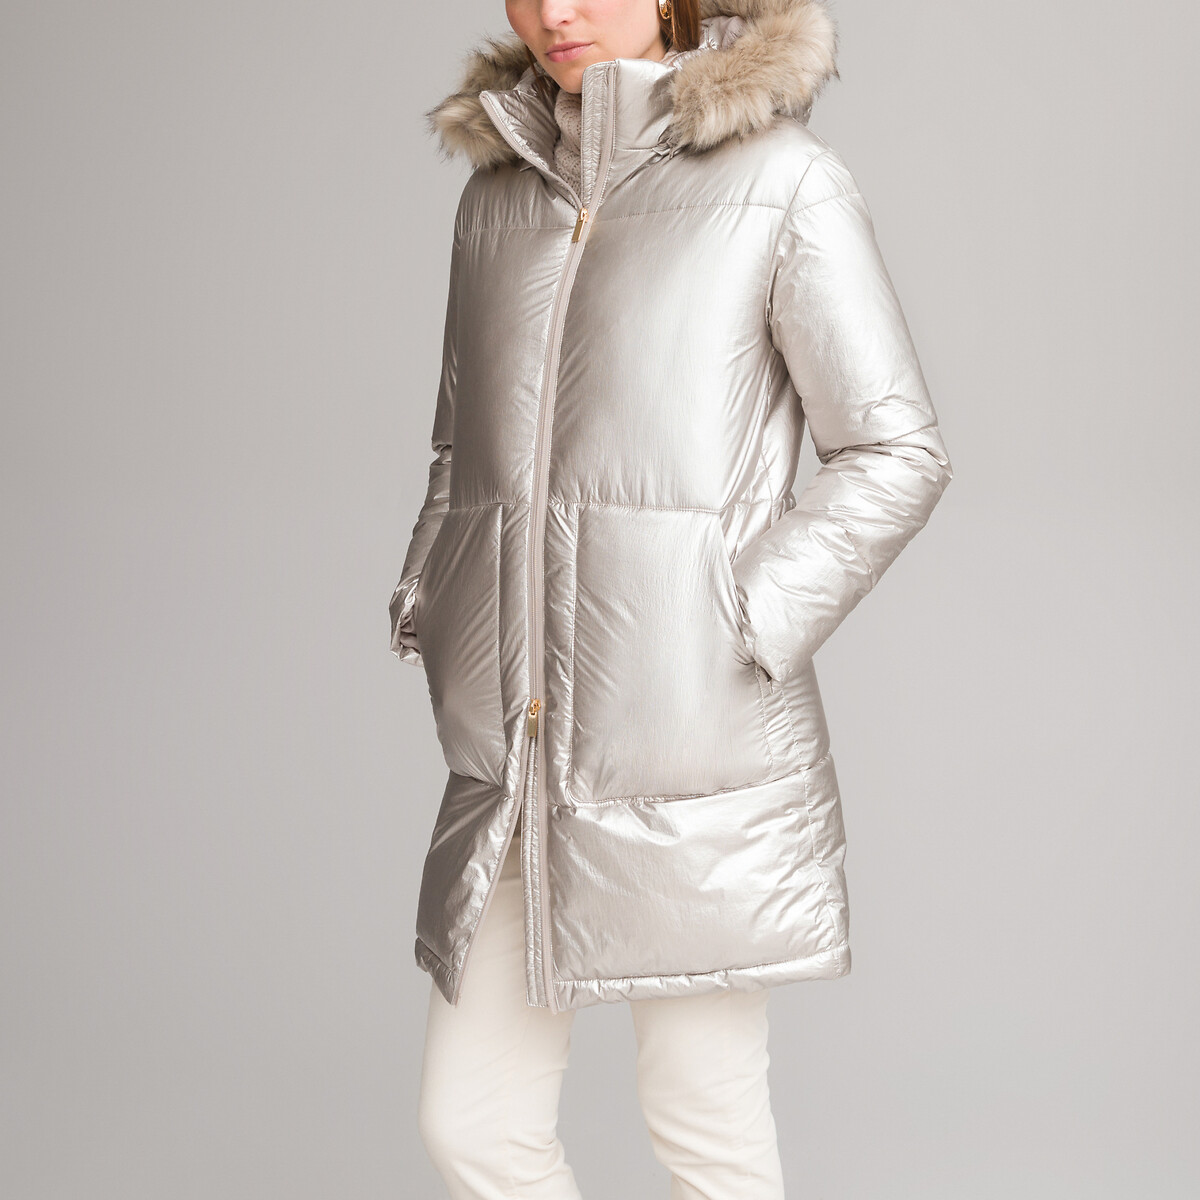 Куртка Стеганая зимняя средней длины съемный капюшон 36 (FR) - 42 (RUS) розовый LaRedoute, размер 36 (FR) - 42 (RUS)